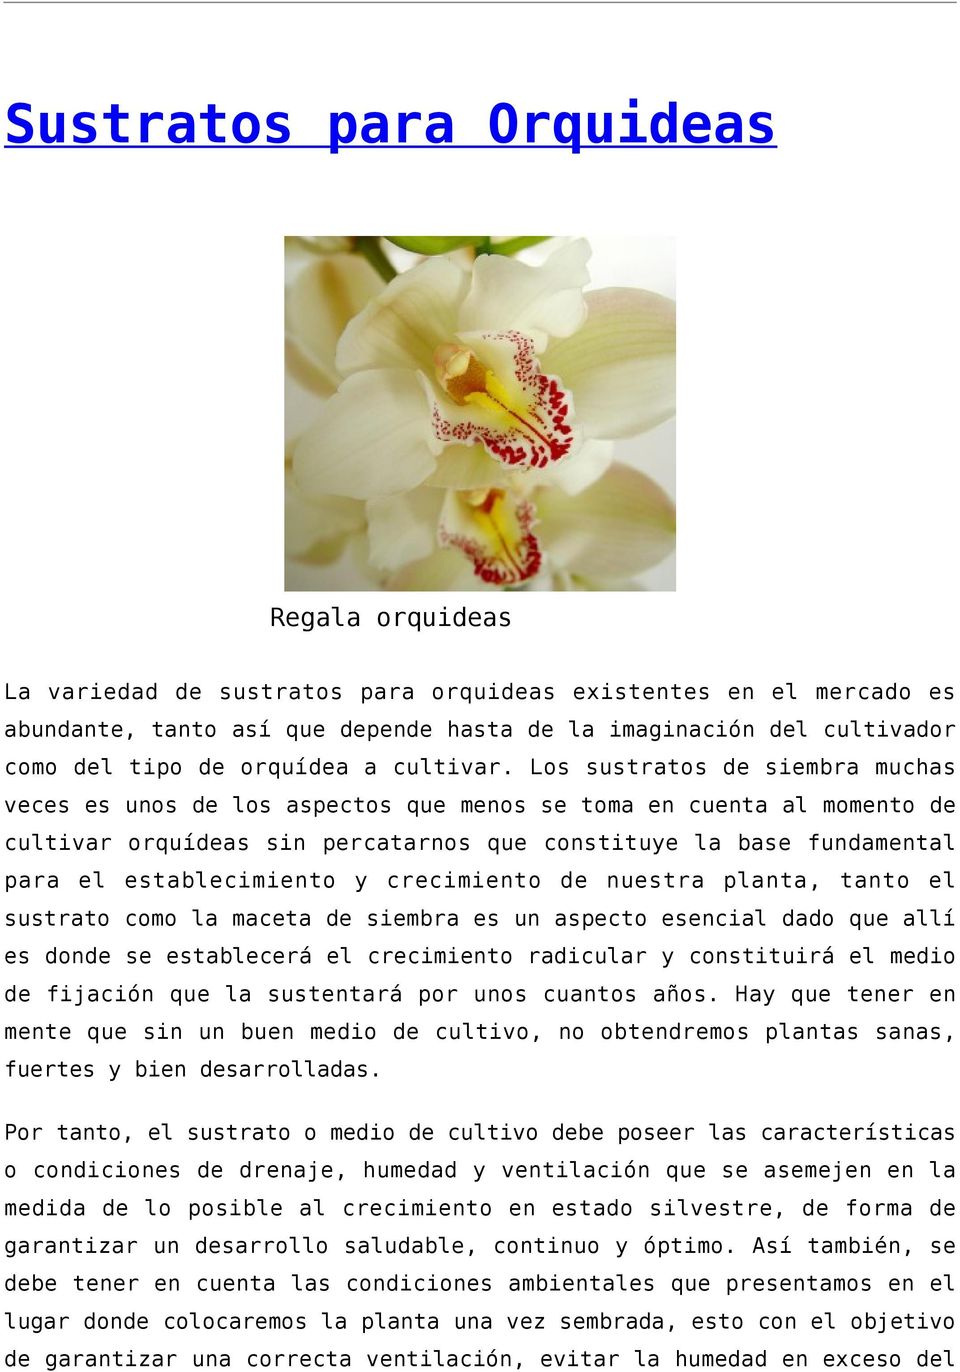 Los sustratos de siembra muchas veces es unos de los aspectos que menos se toma en cuenta al momento de cultivar orquídeas sin percatarnos que constituye la base fundamental para el establecimiento y